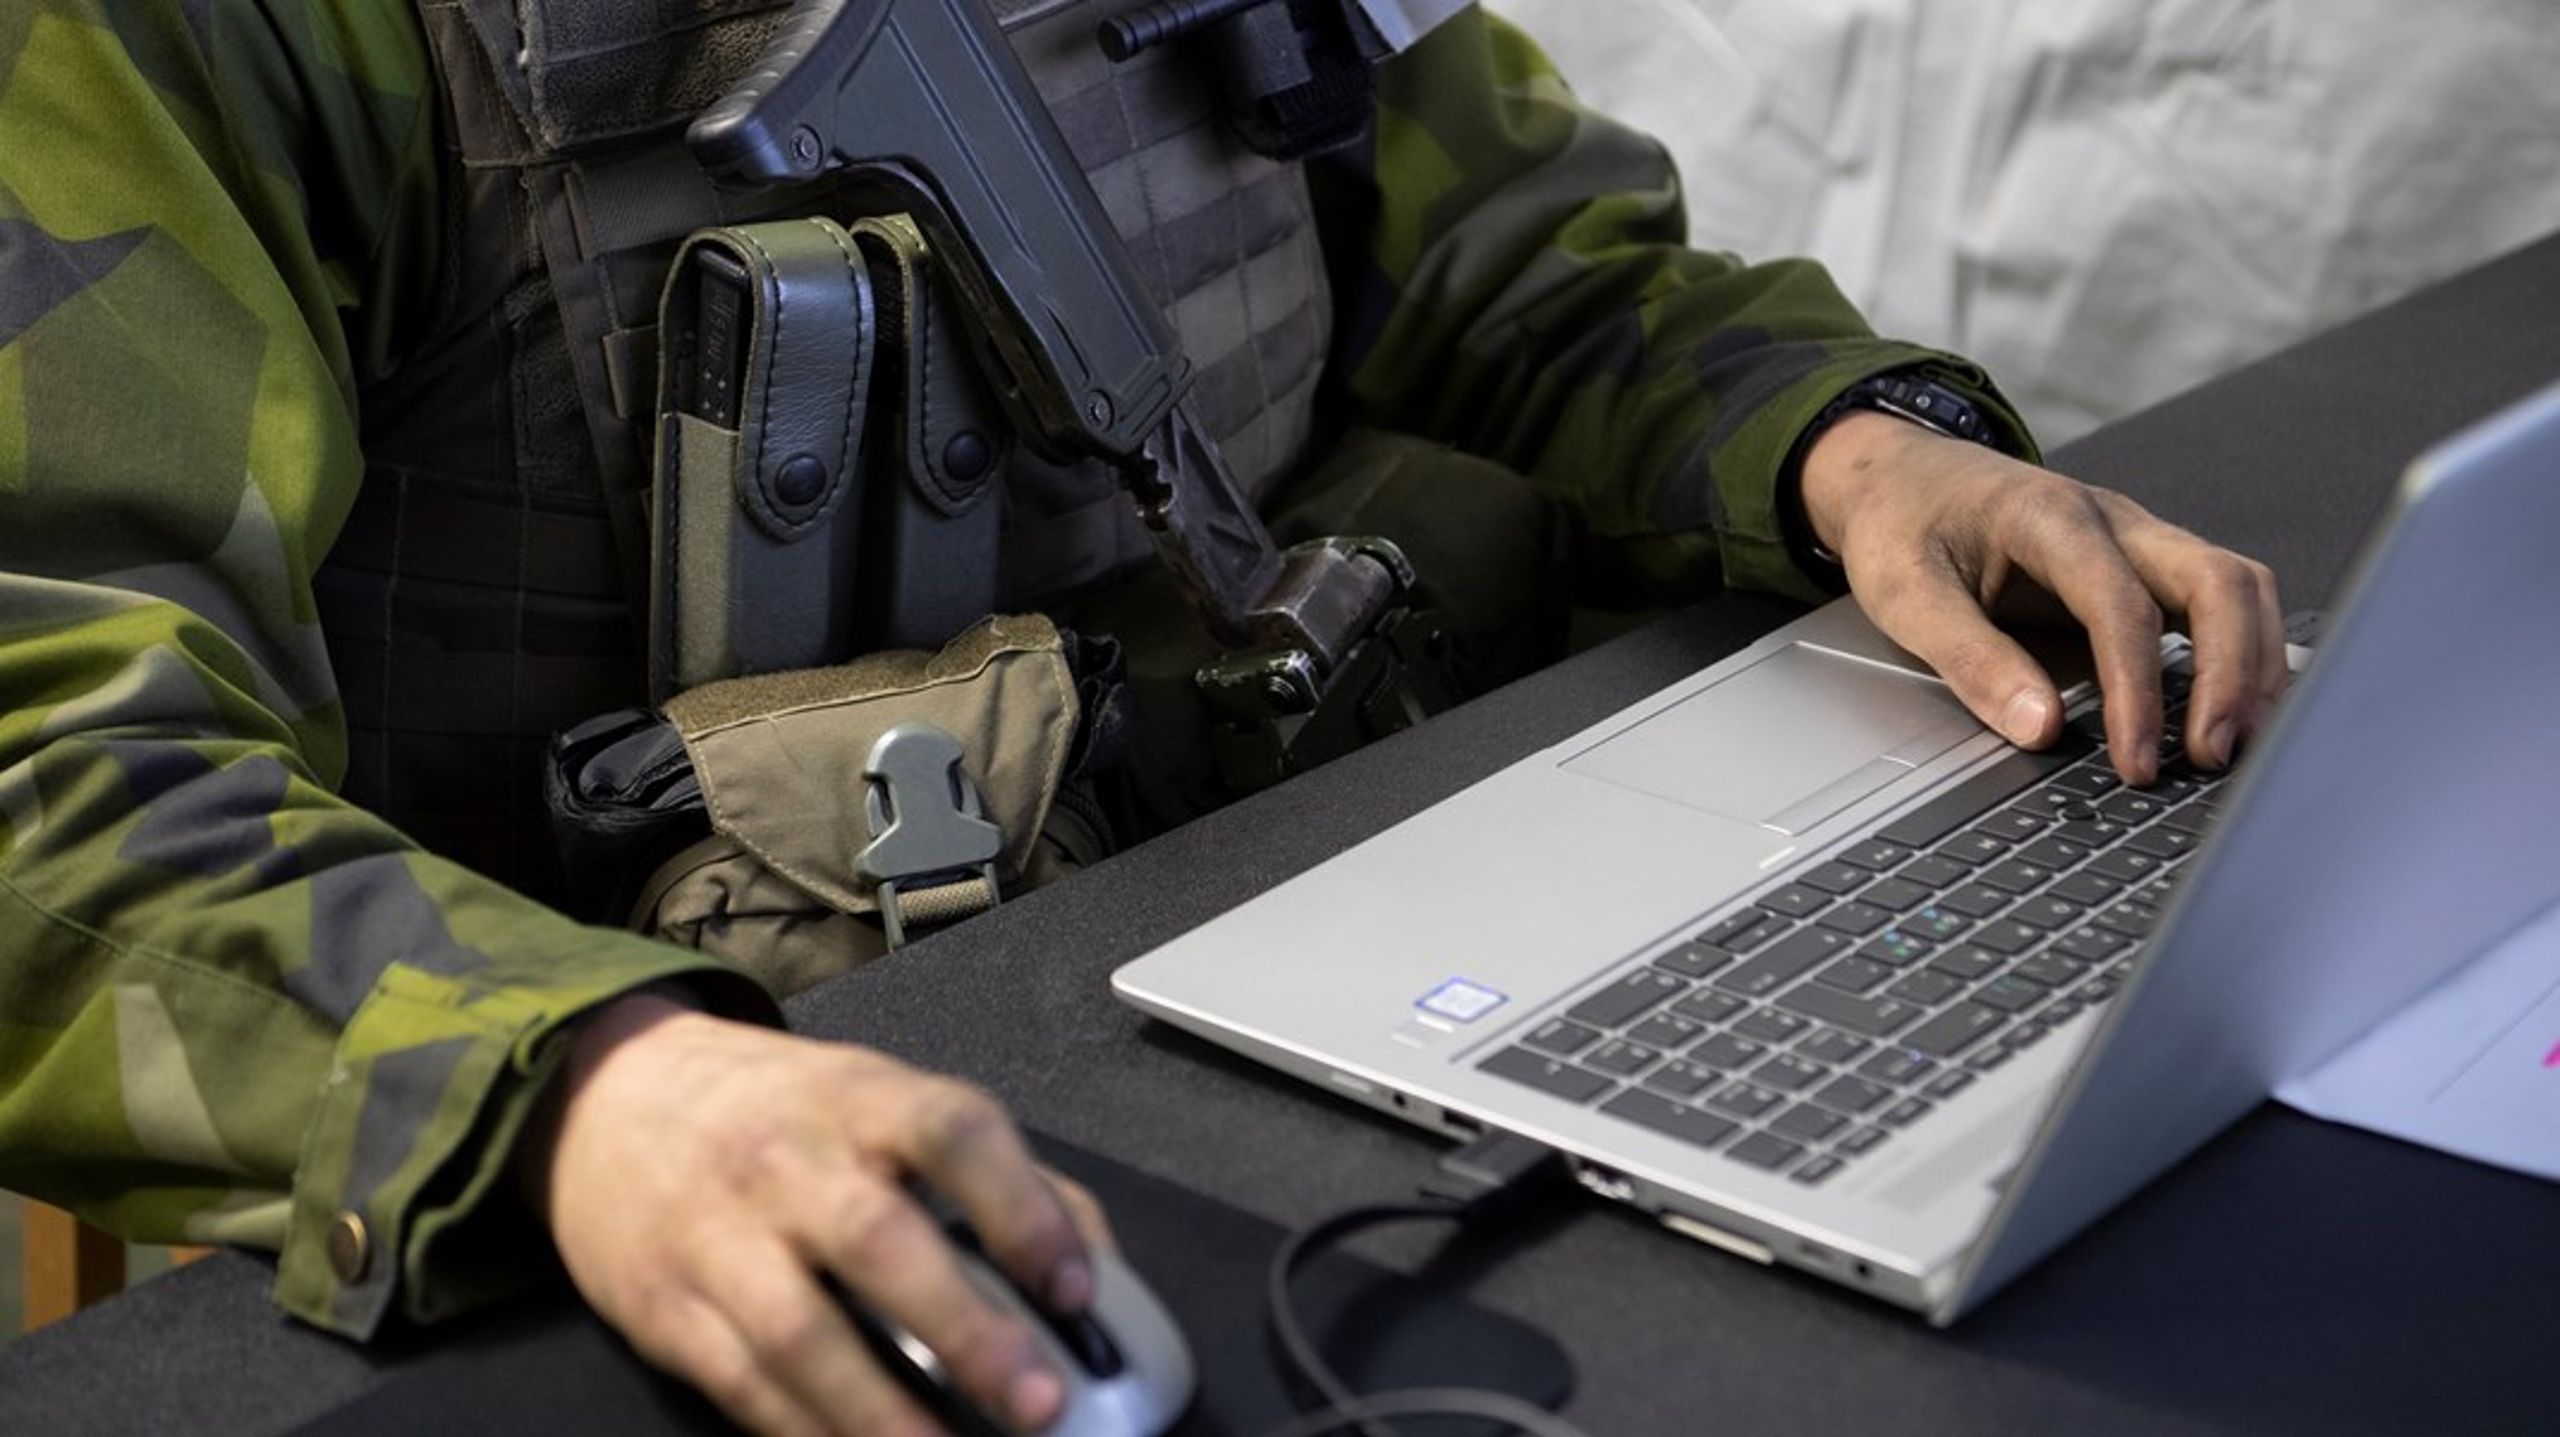 Det är viktigt att Sveriges cyberförsvar stärks, skriver debattörerna.